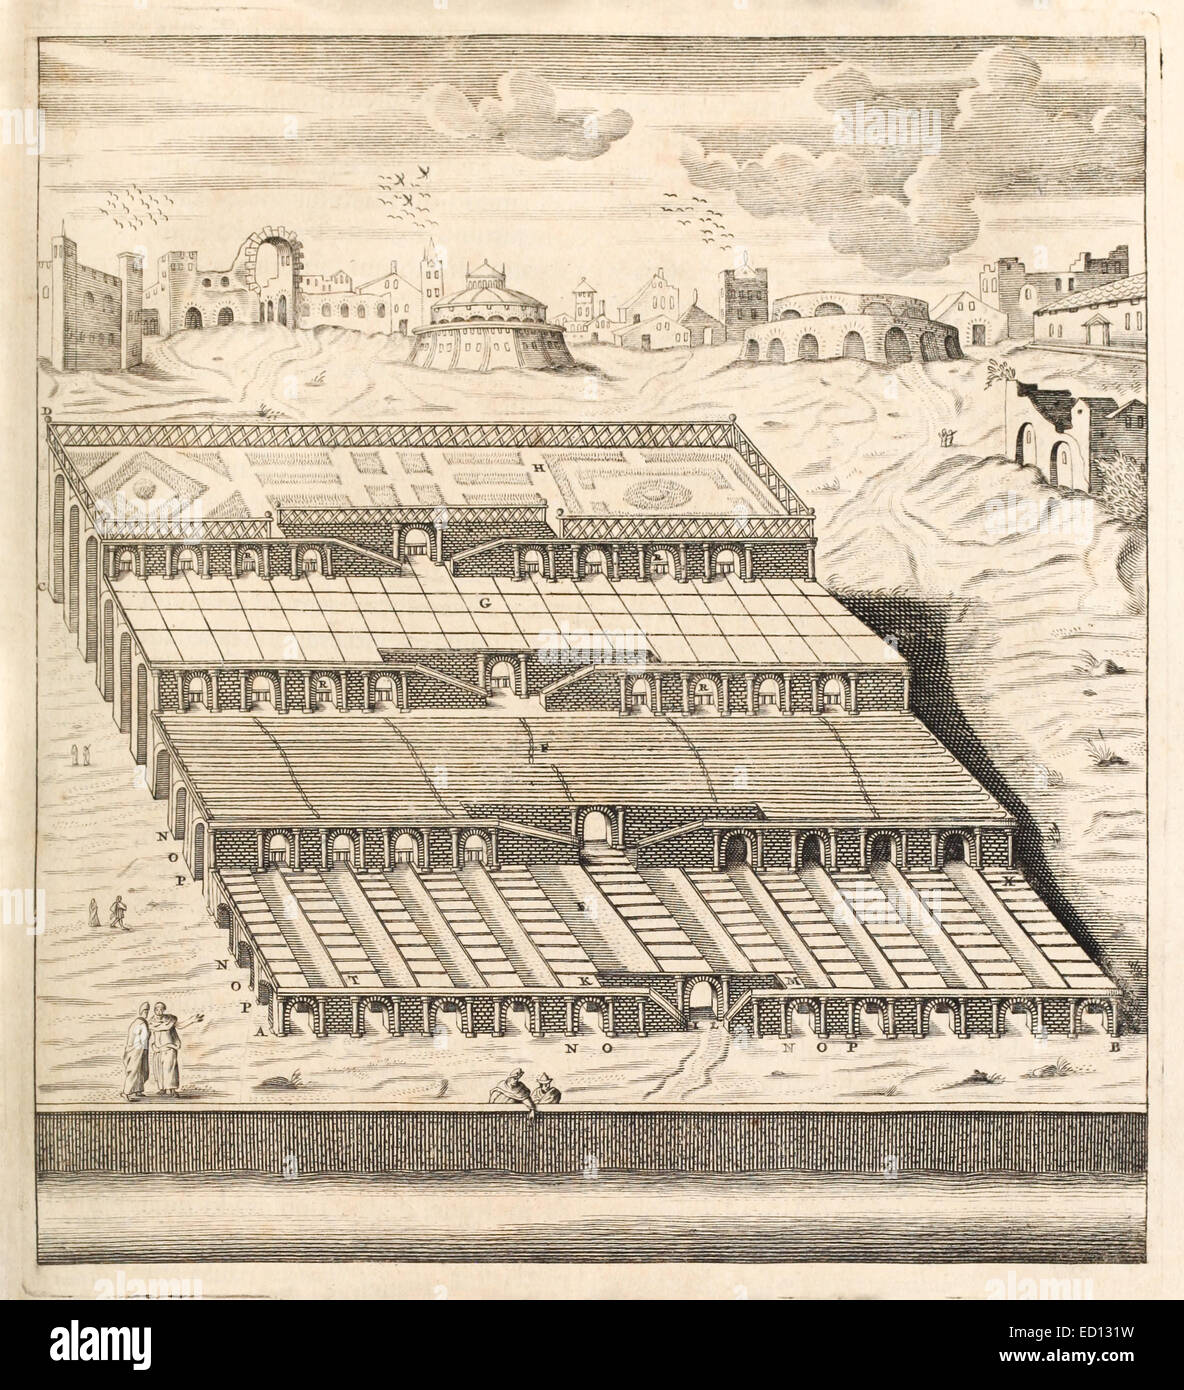 Xvii secolo illustrazione di Semiramis sulle sponde dell'Eufrate. Vedere la descrizione per maggiori informazioni. Foto Stock